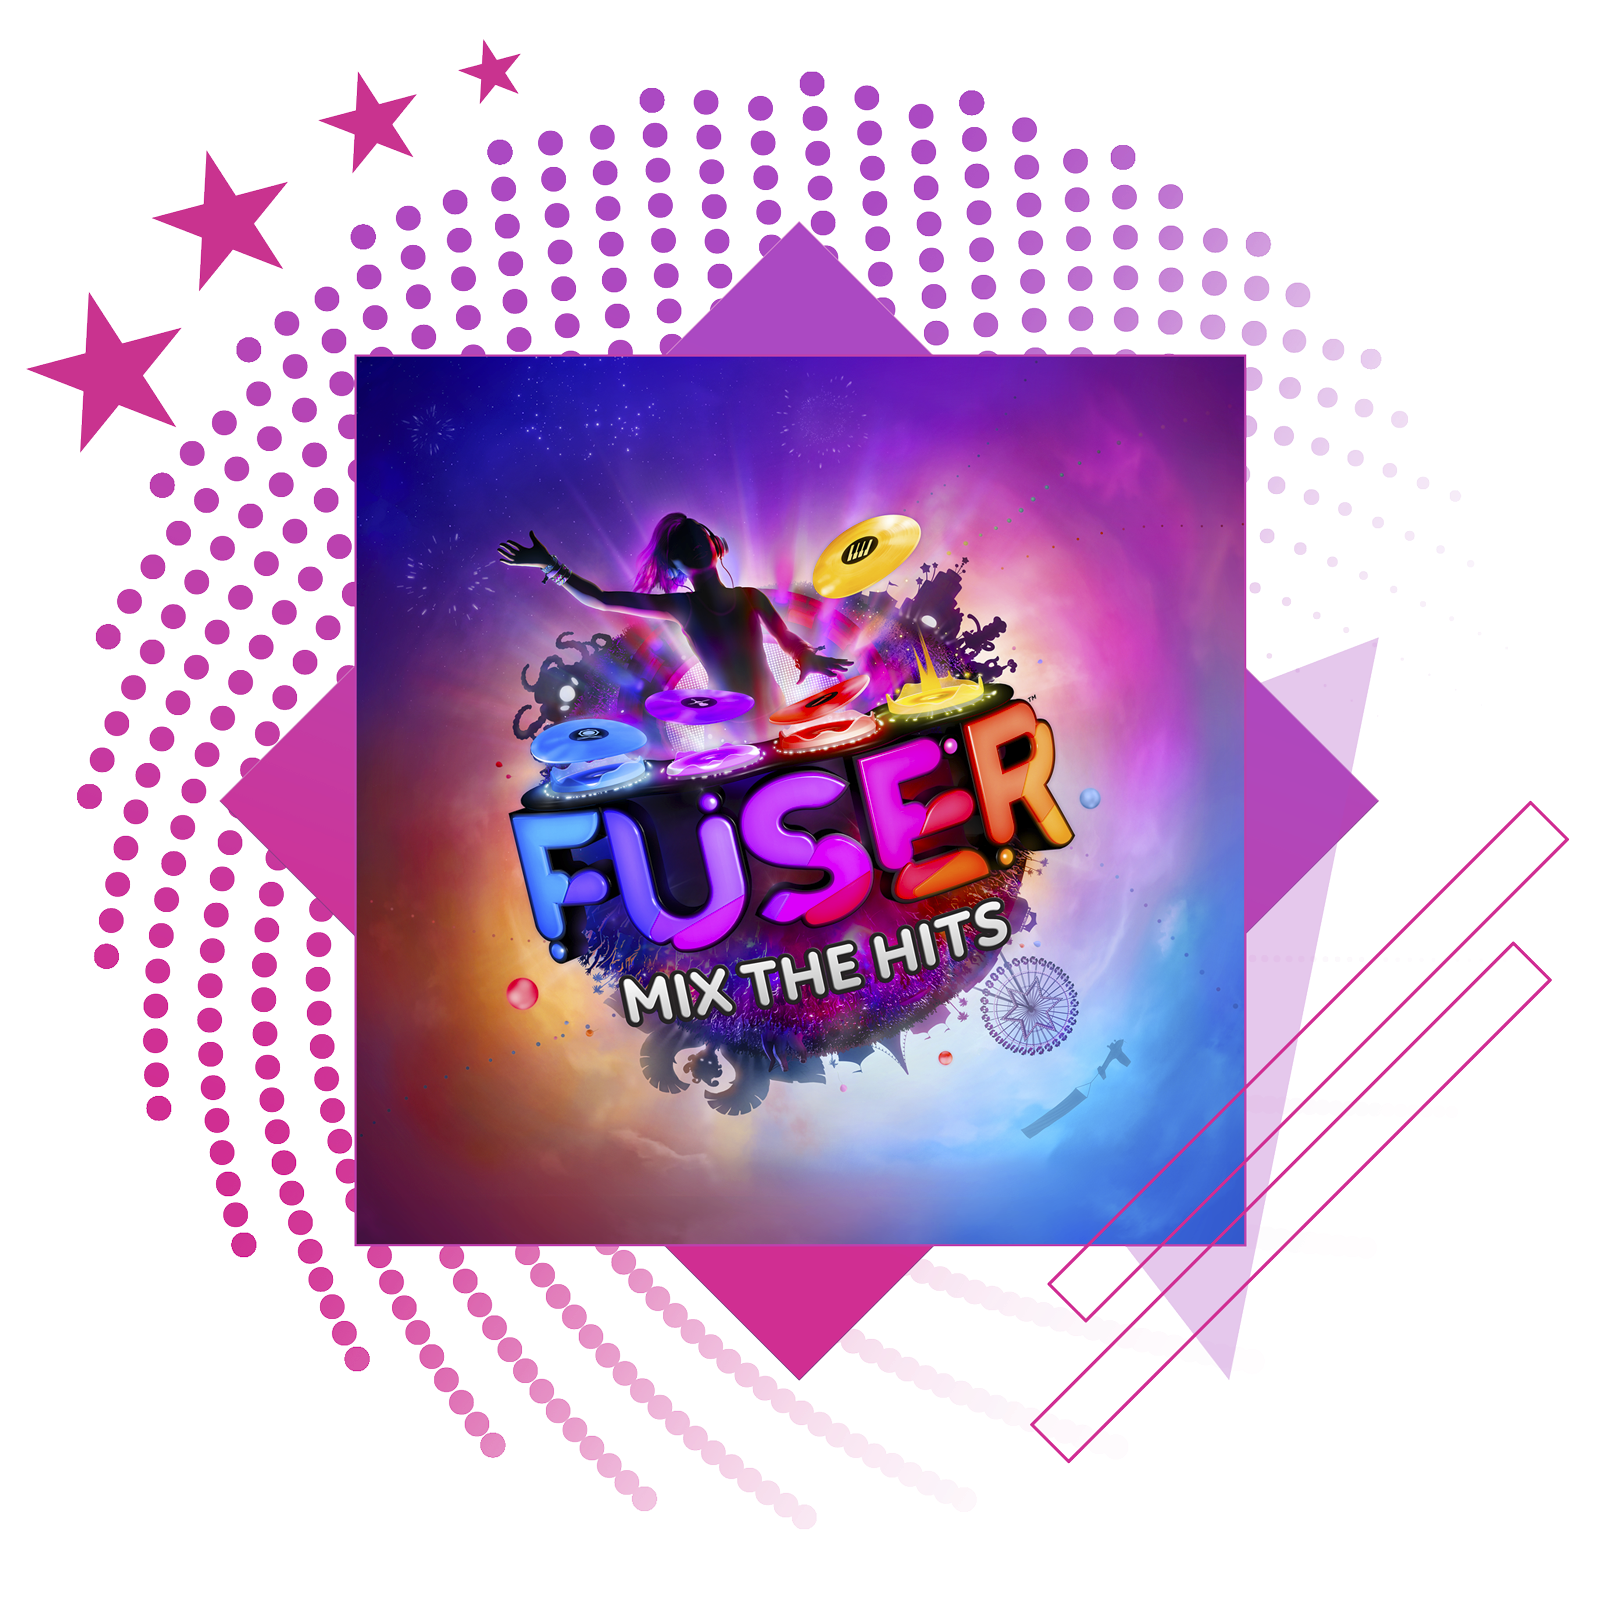 صورة رمزية لأفضل ألعاب الإيقاع الموسيقي تعرض صورة فنية أساسية من Fuser.